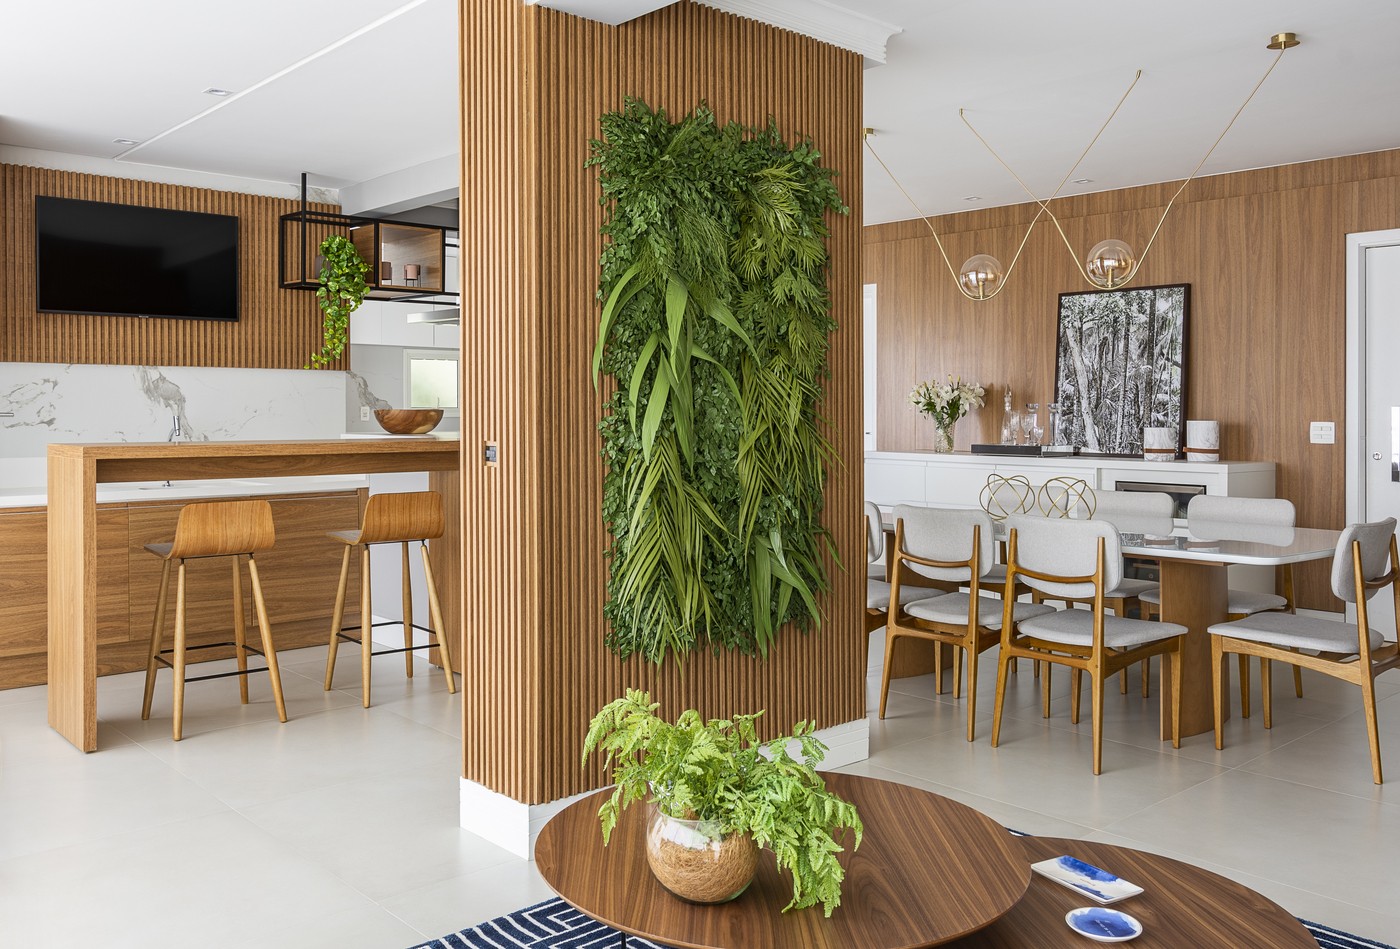 Décor do dia: sala de jantar com jardim vertical e painel de madeira (Foto: Luiz Franco)